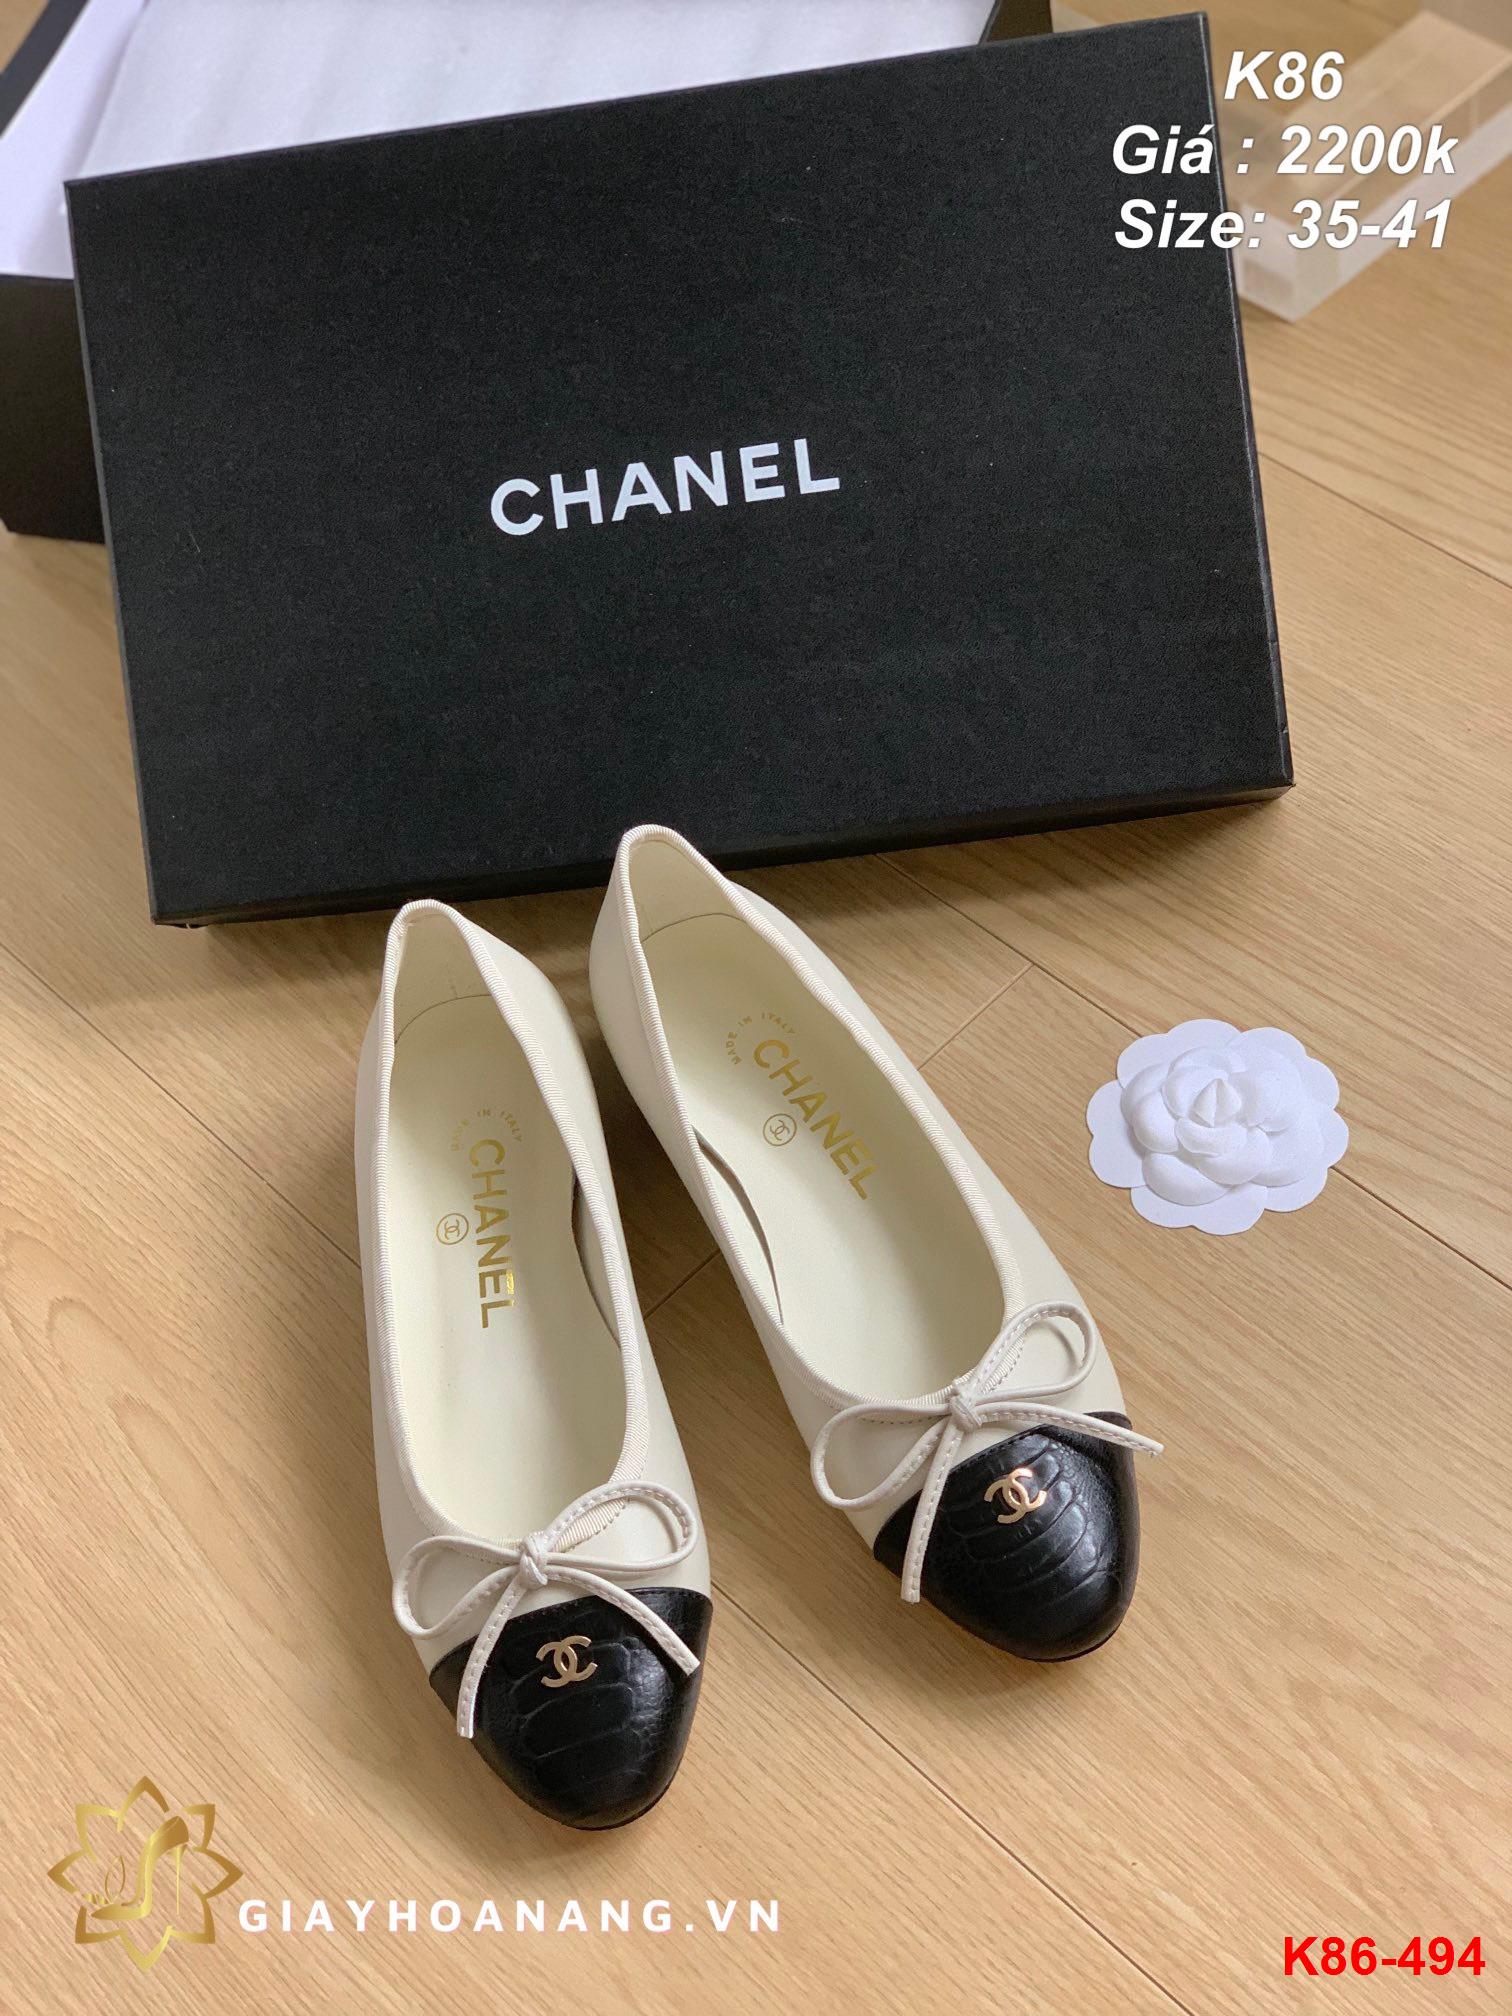 K86-494 Chanel giày bệt siêu cấp